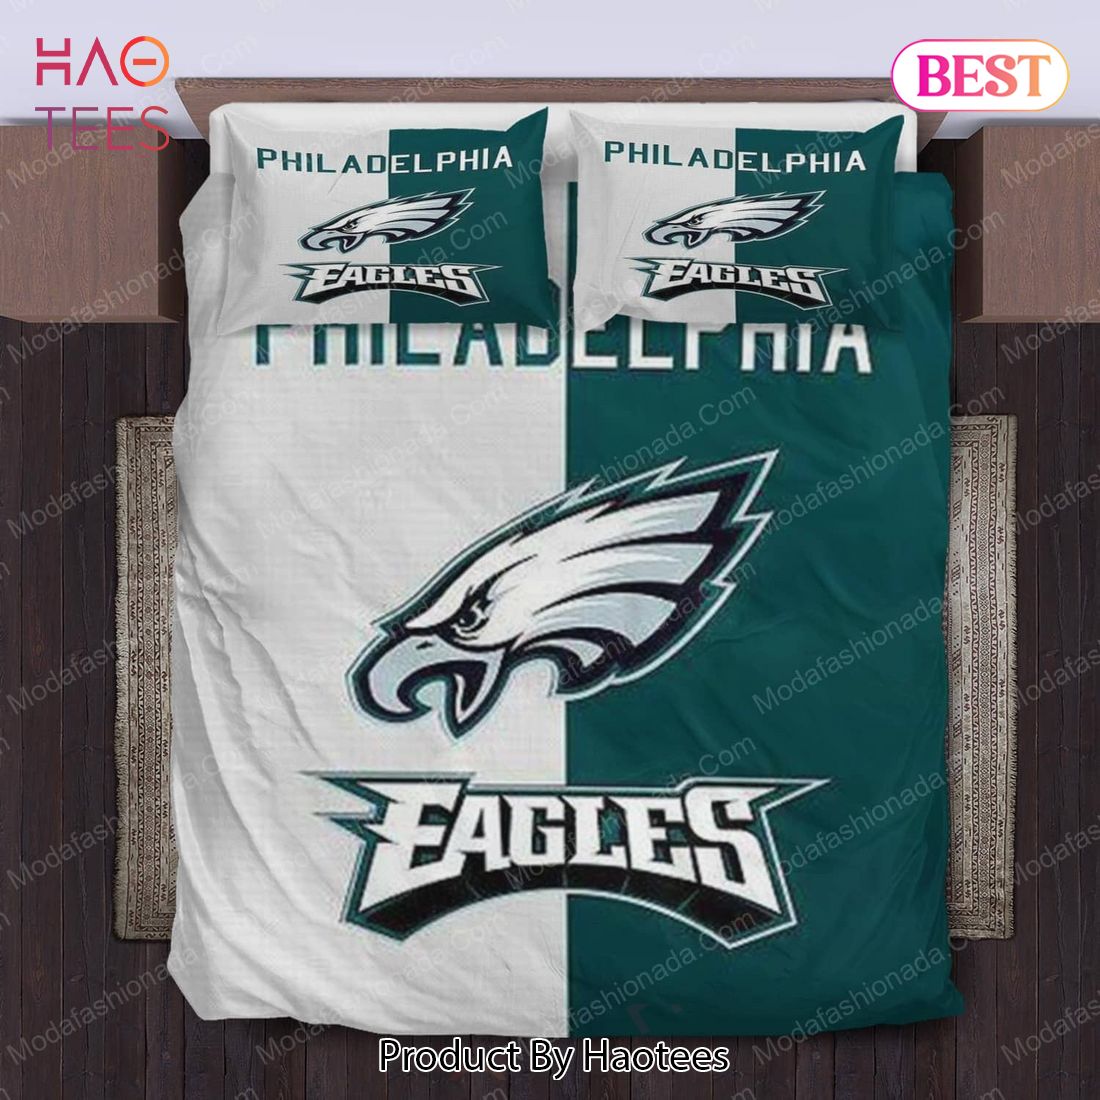 Buy Philadelphia Eagles Logo Bedding Sets 02 Bed Sets, Bedroom Sets, Comforter Sets, Duvet Cover, Bedspread